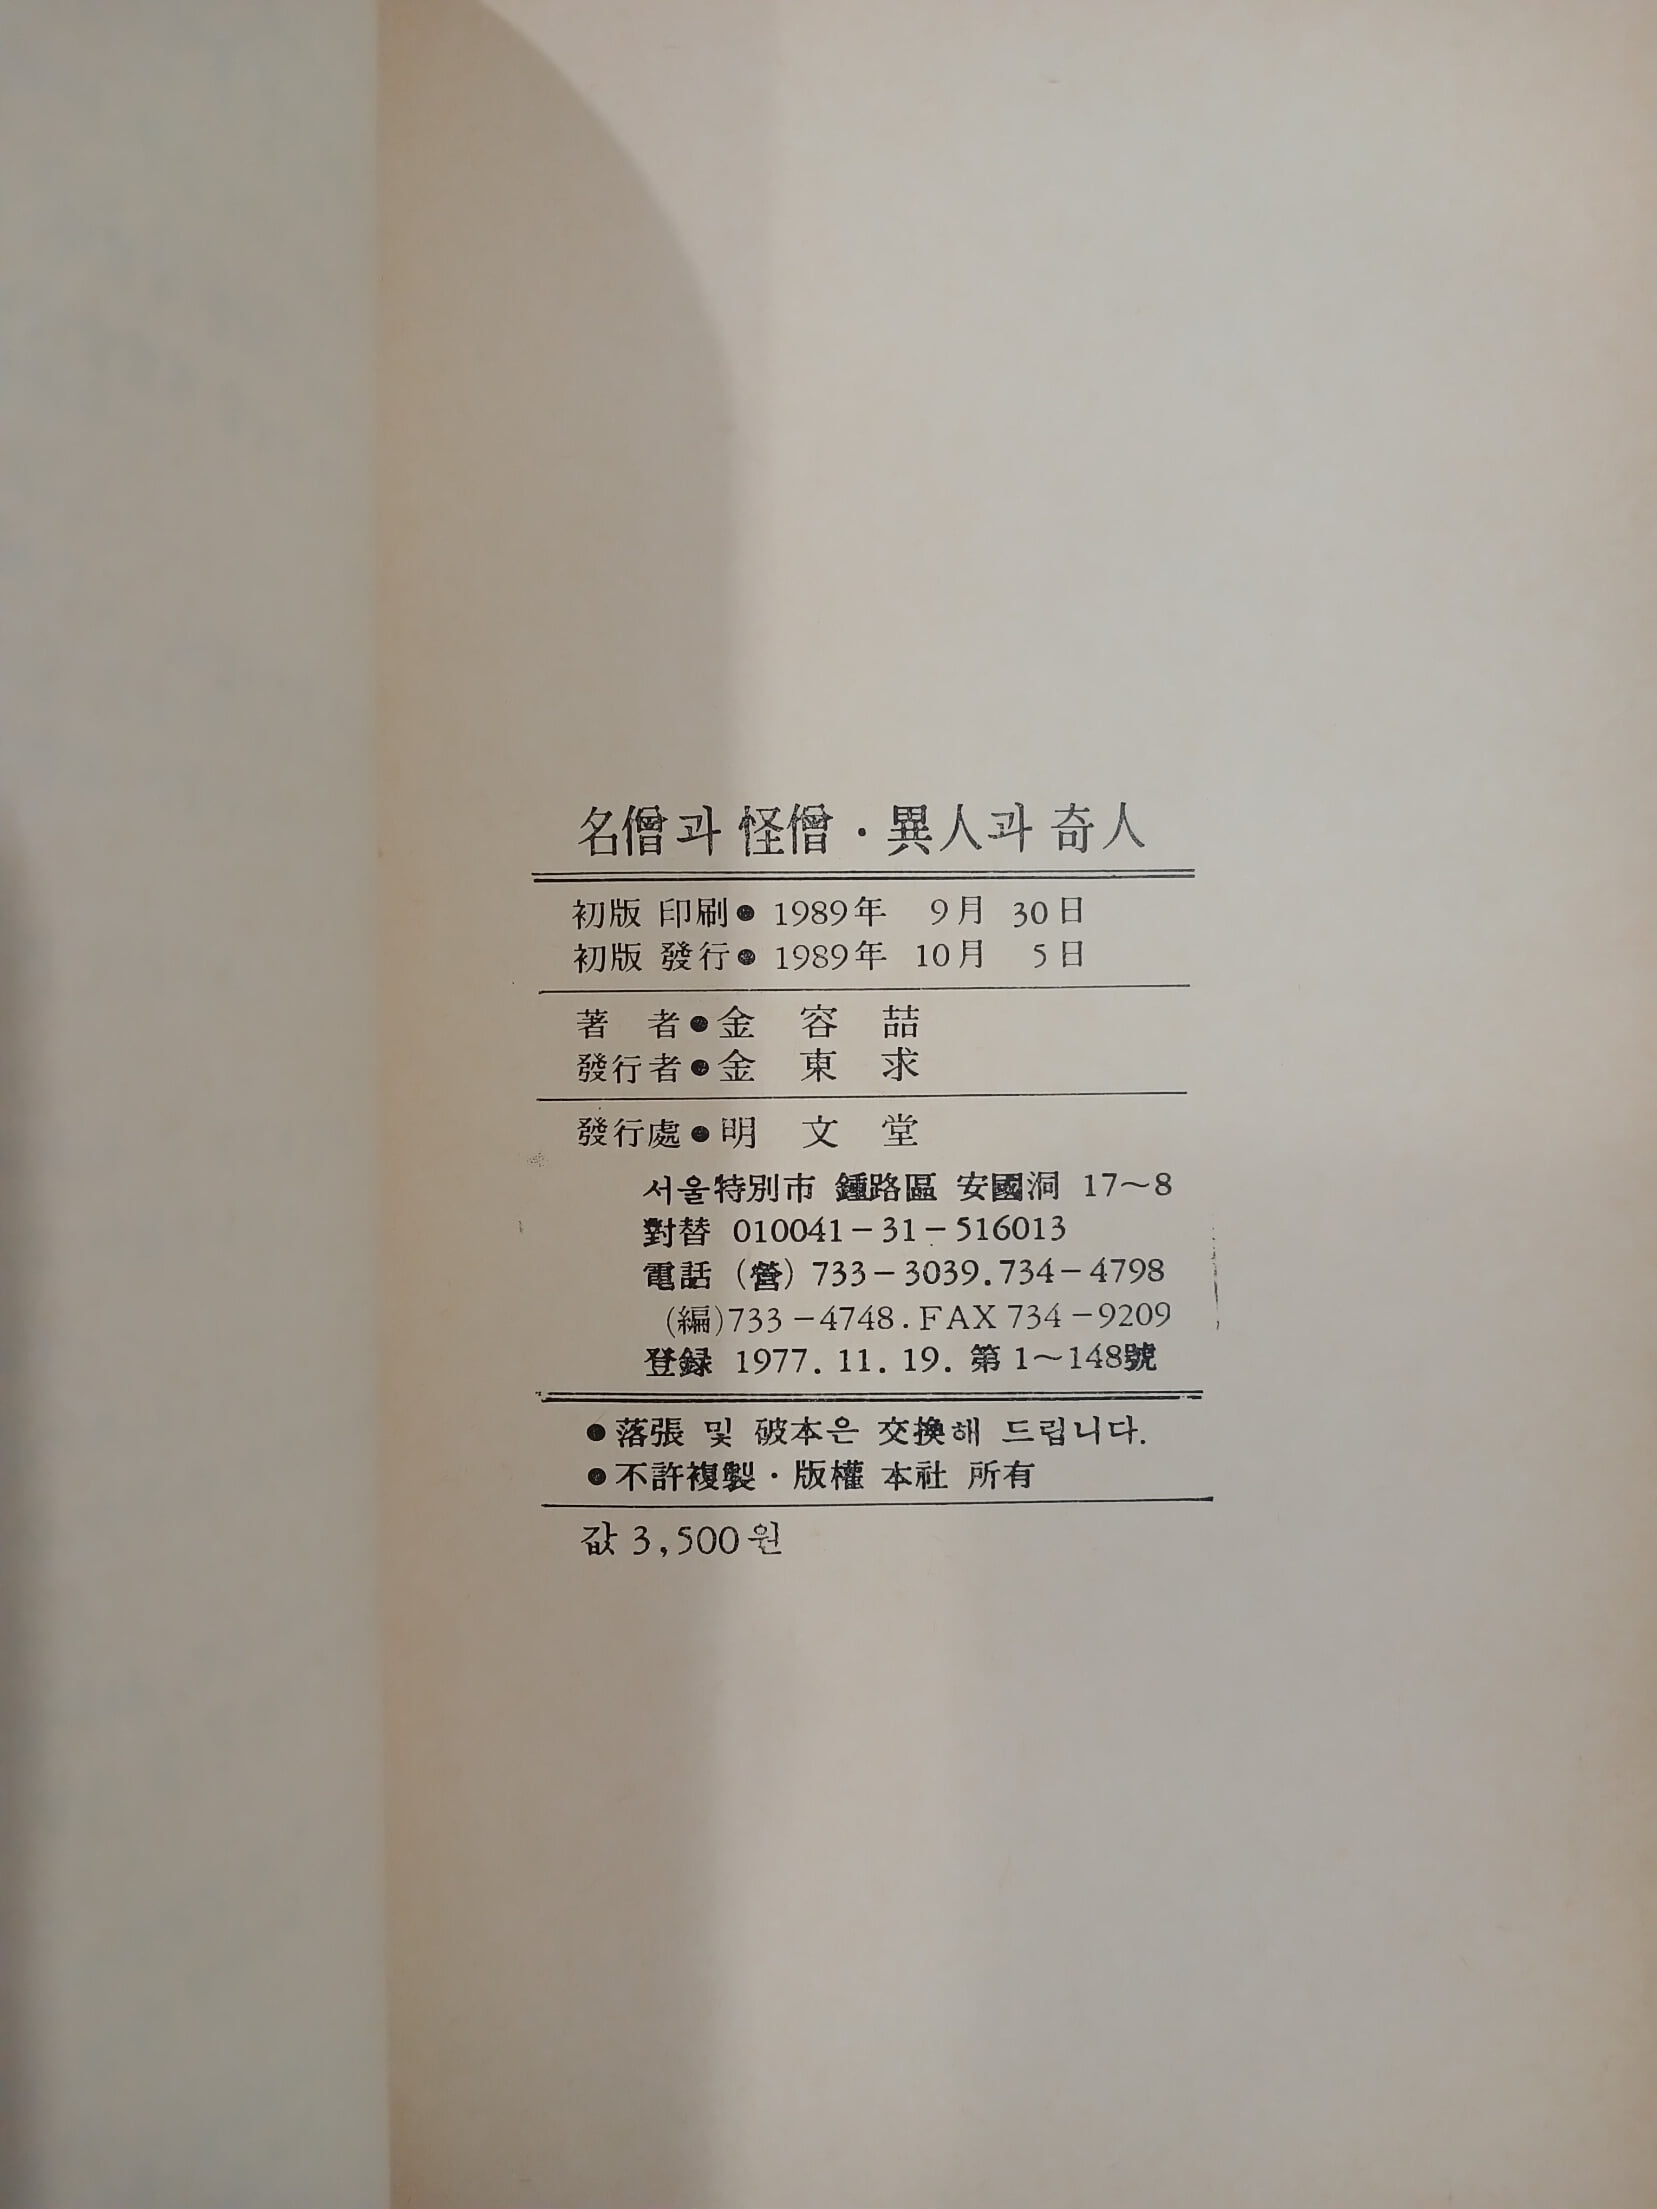 명승과 괴승  이인과 기인 | 김용철 | 명문당 | 1989년 10월 초판